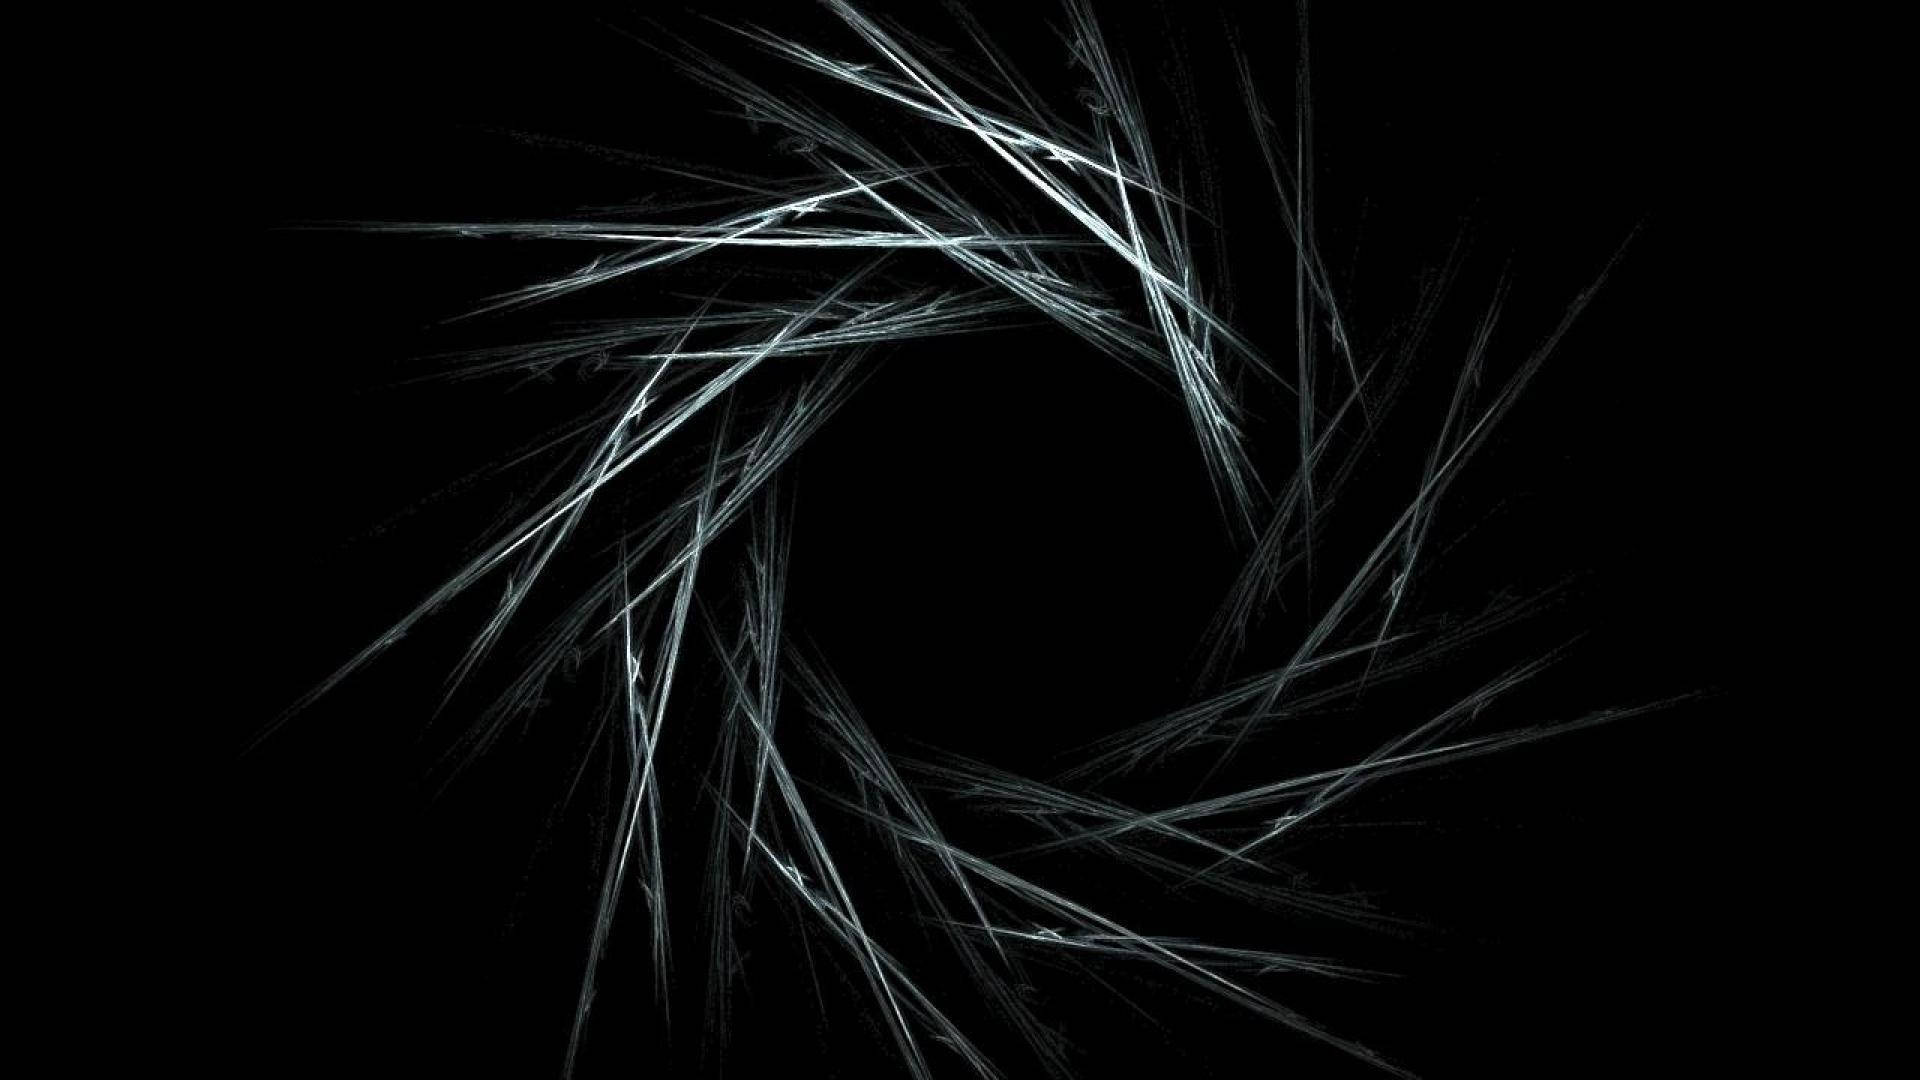 Cool Black Spiral Shape Background